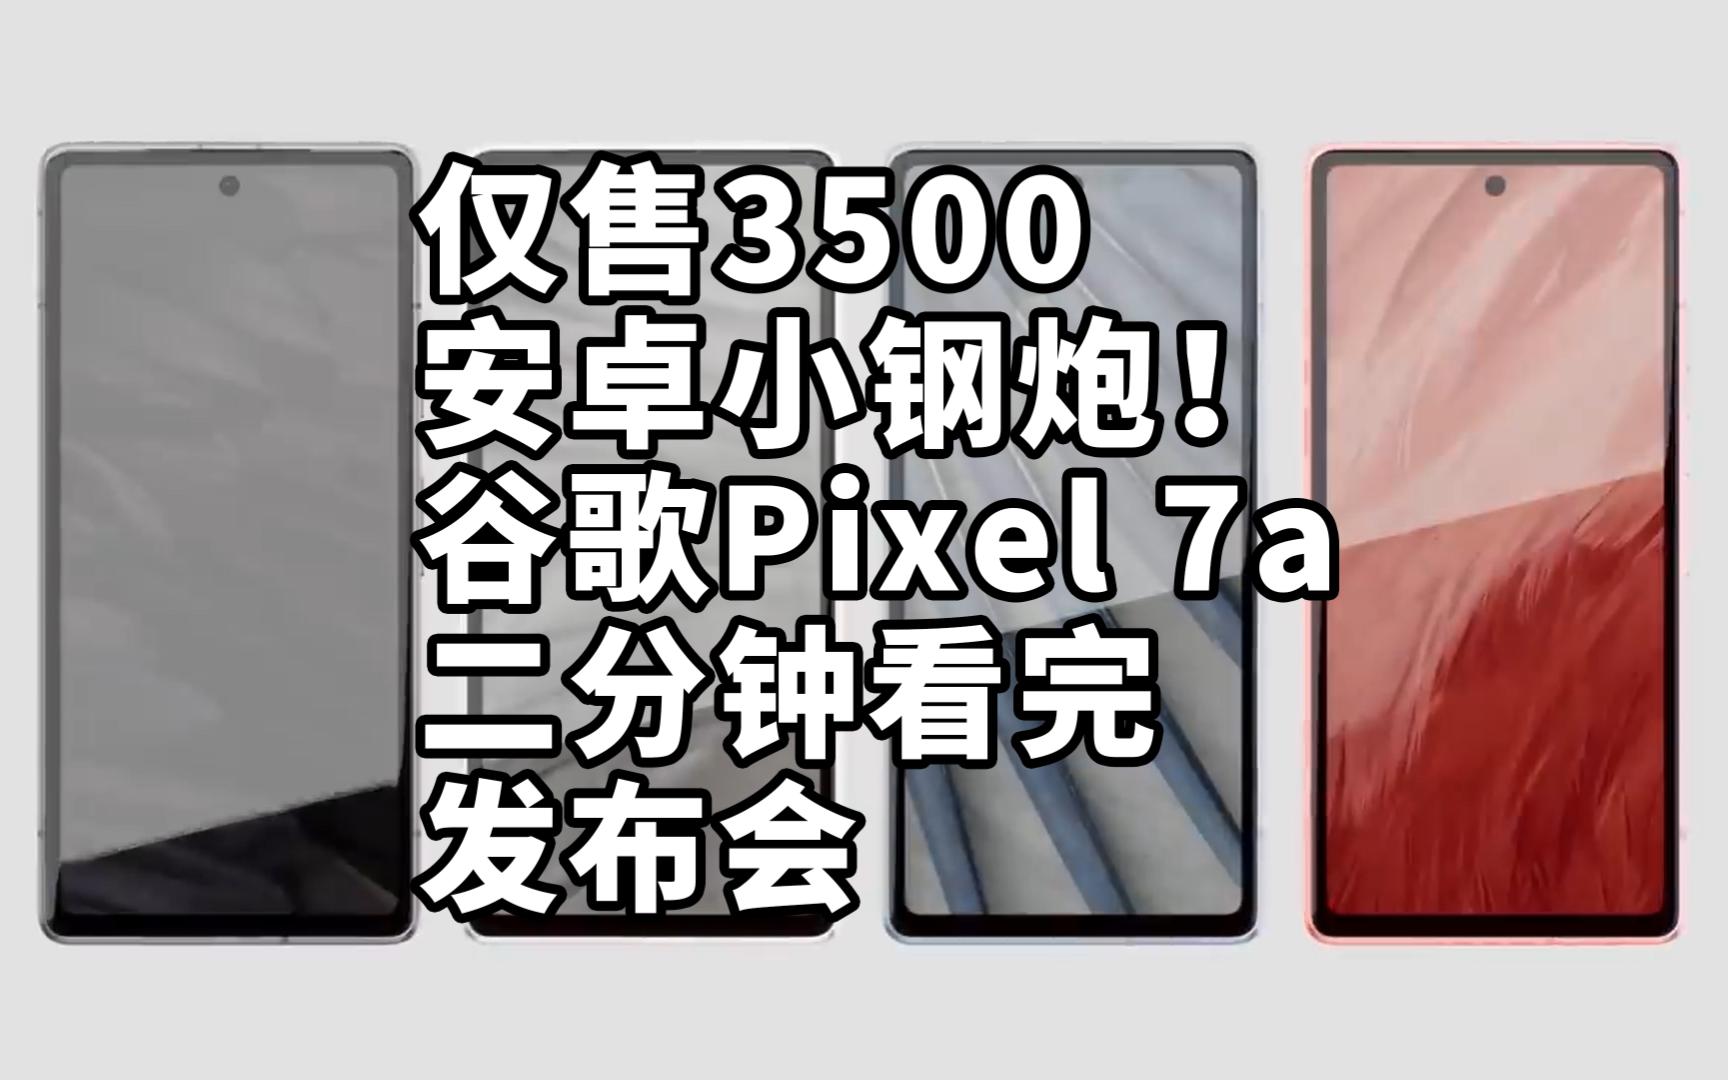 仅售3500 安卓小钢炮！谷歌Pixel 7a 二分钟看完发布会